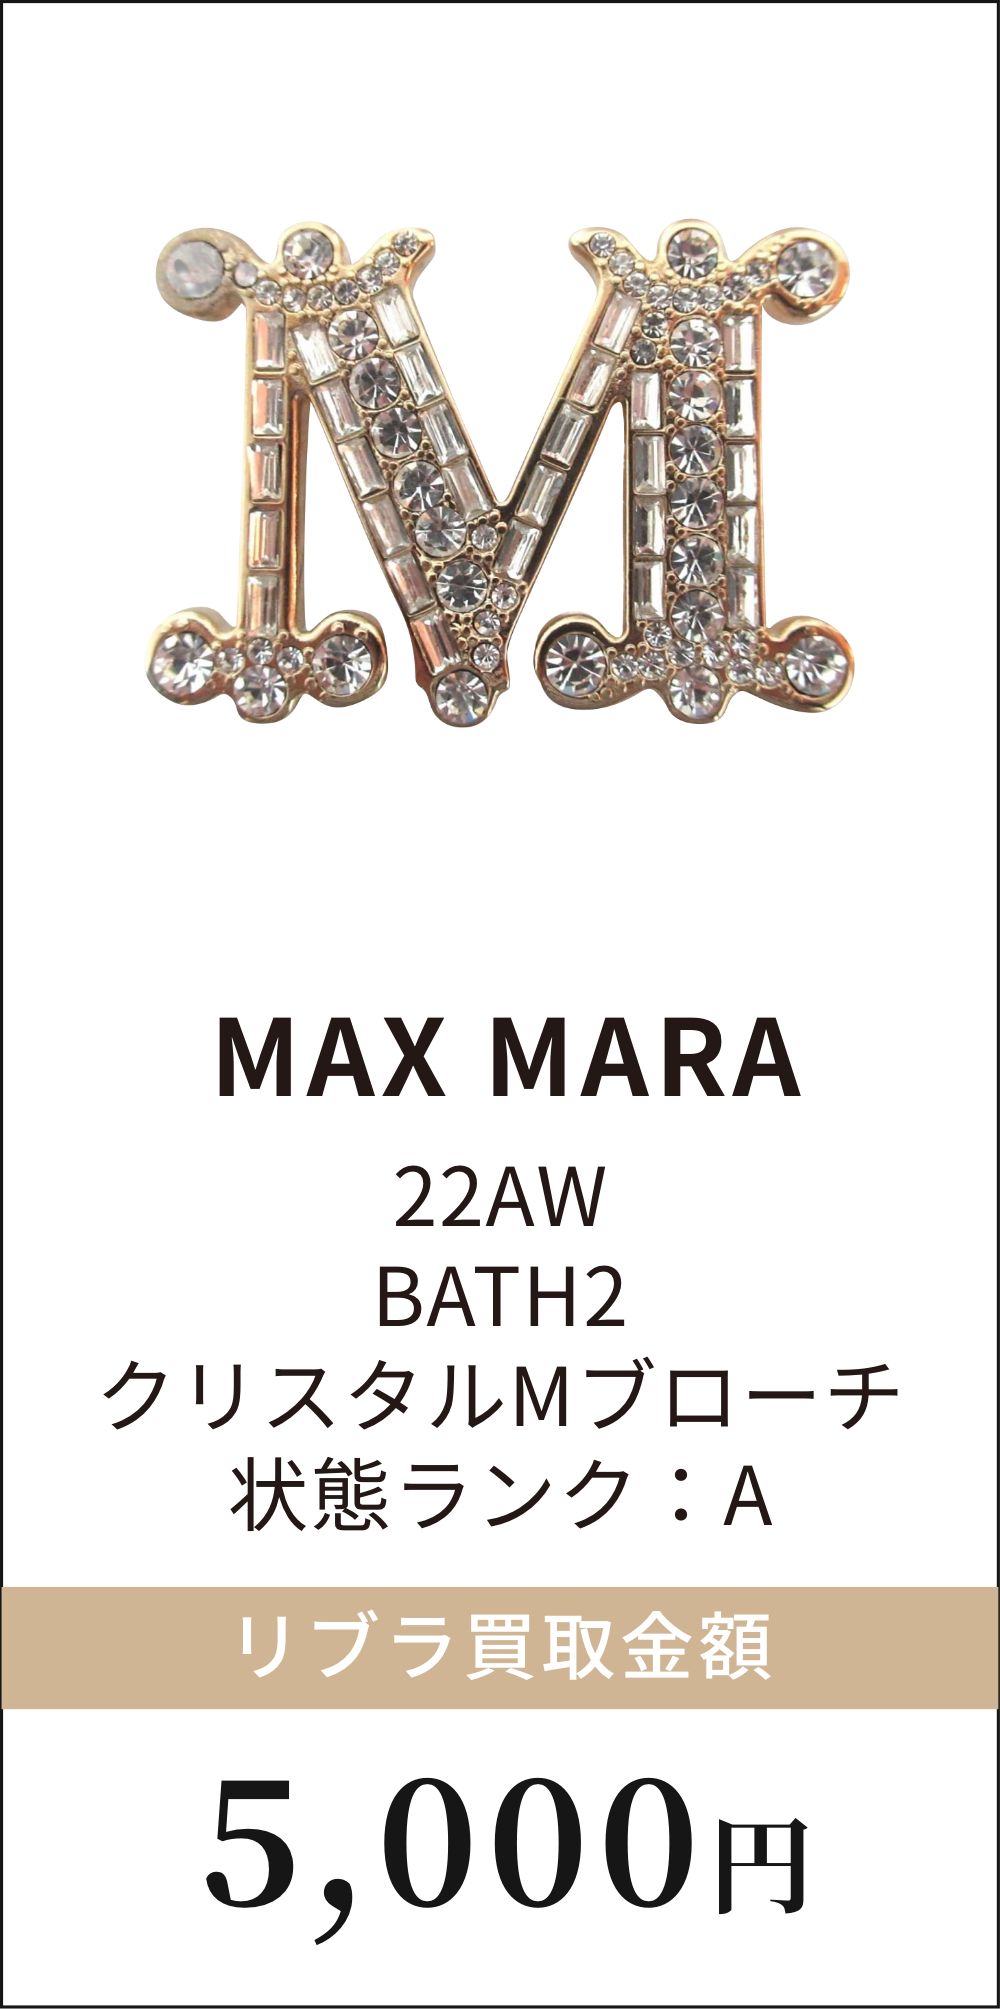 MAX MARA 22AW BATH2 クリスタルMブローチ